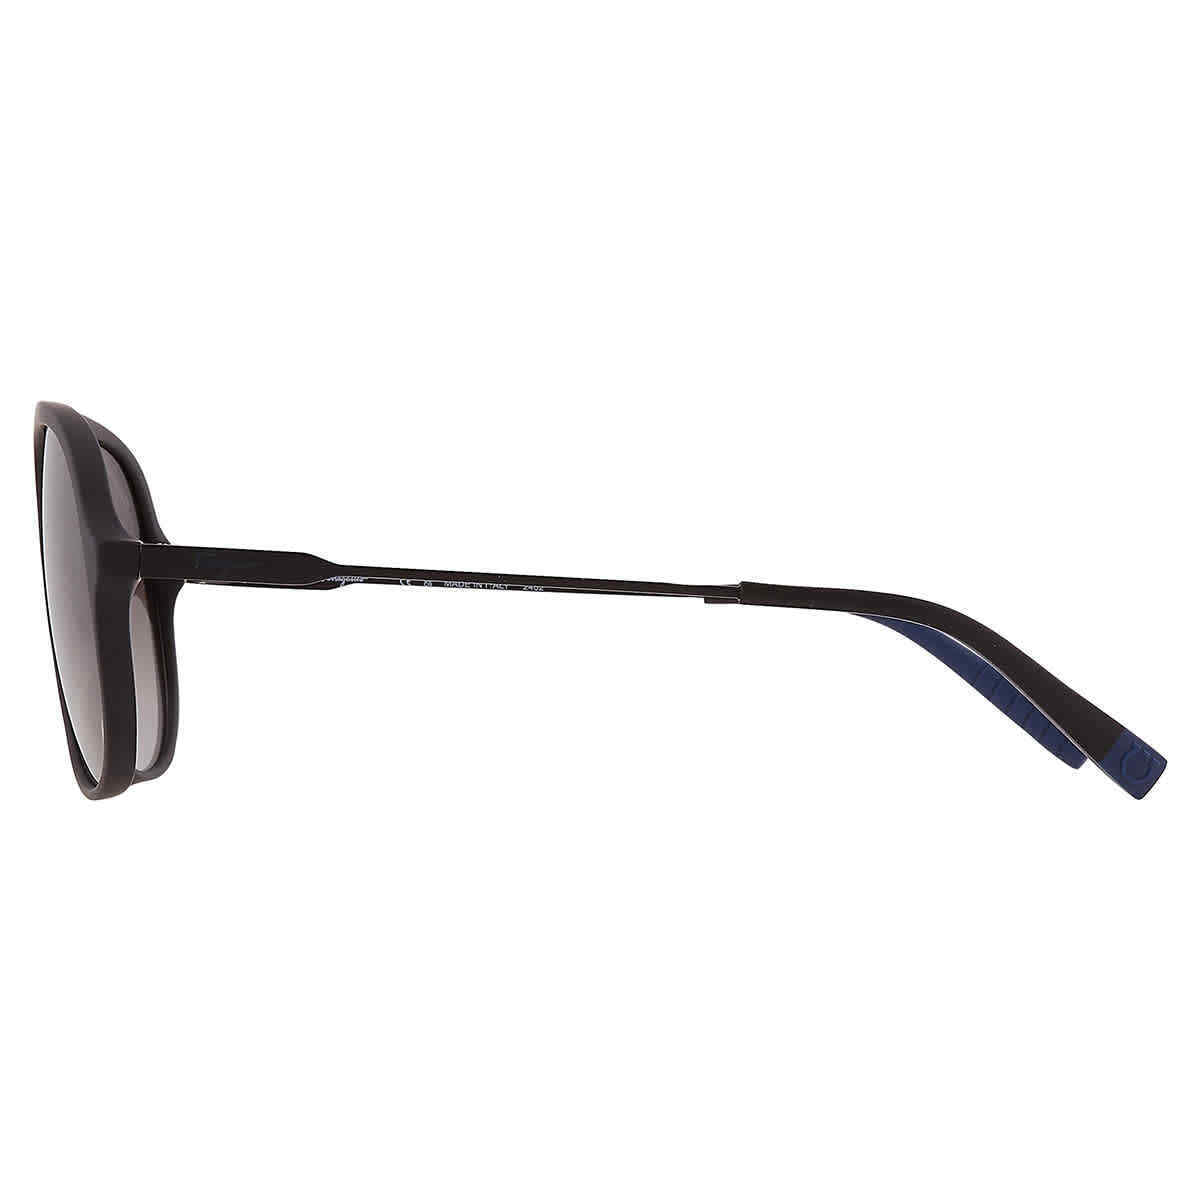 Salvatore Ferragamo SF 999S-002 60mm New Sunglasses